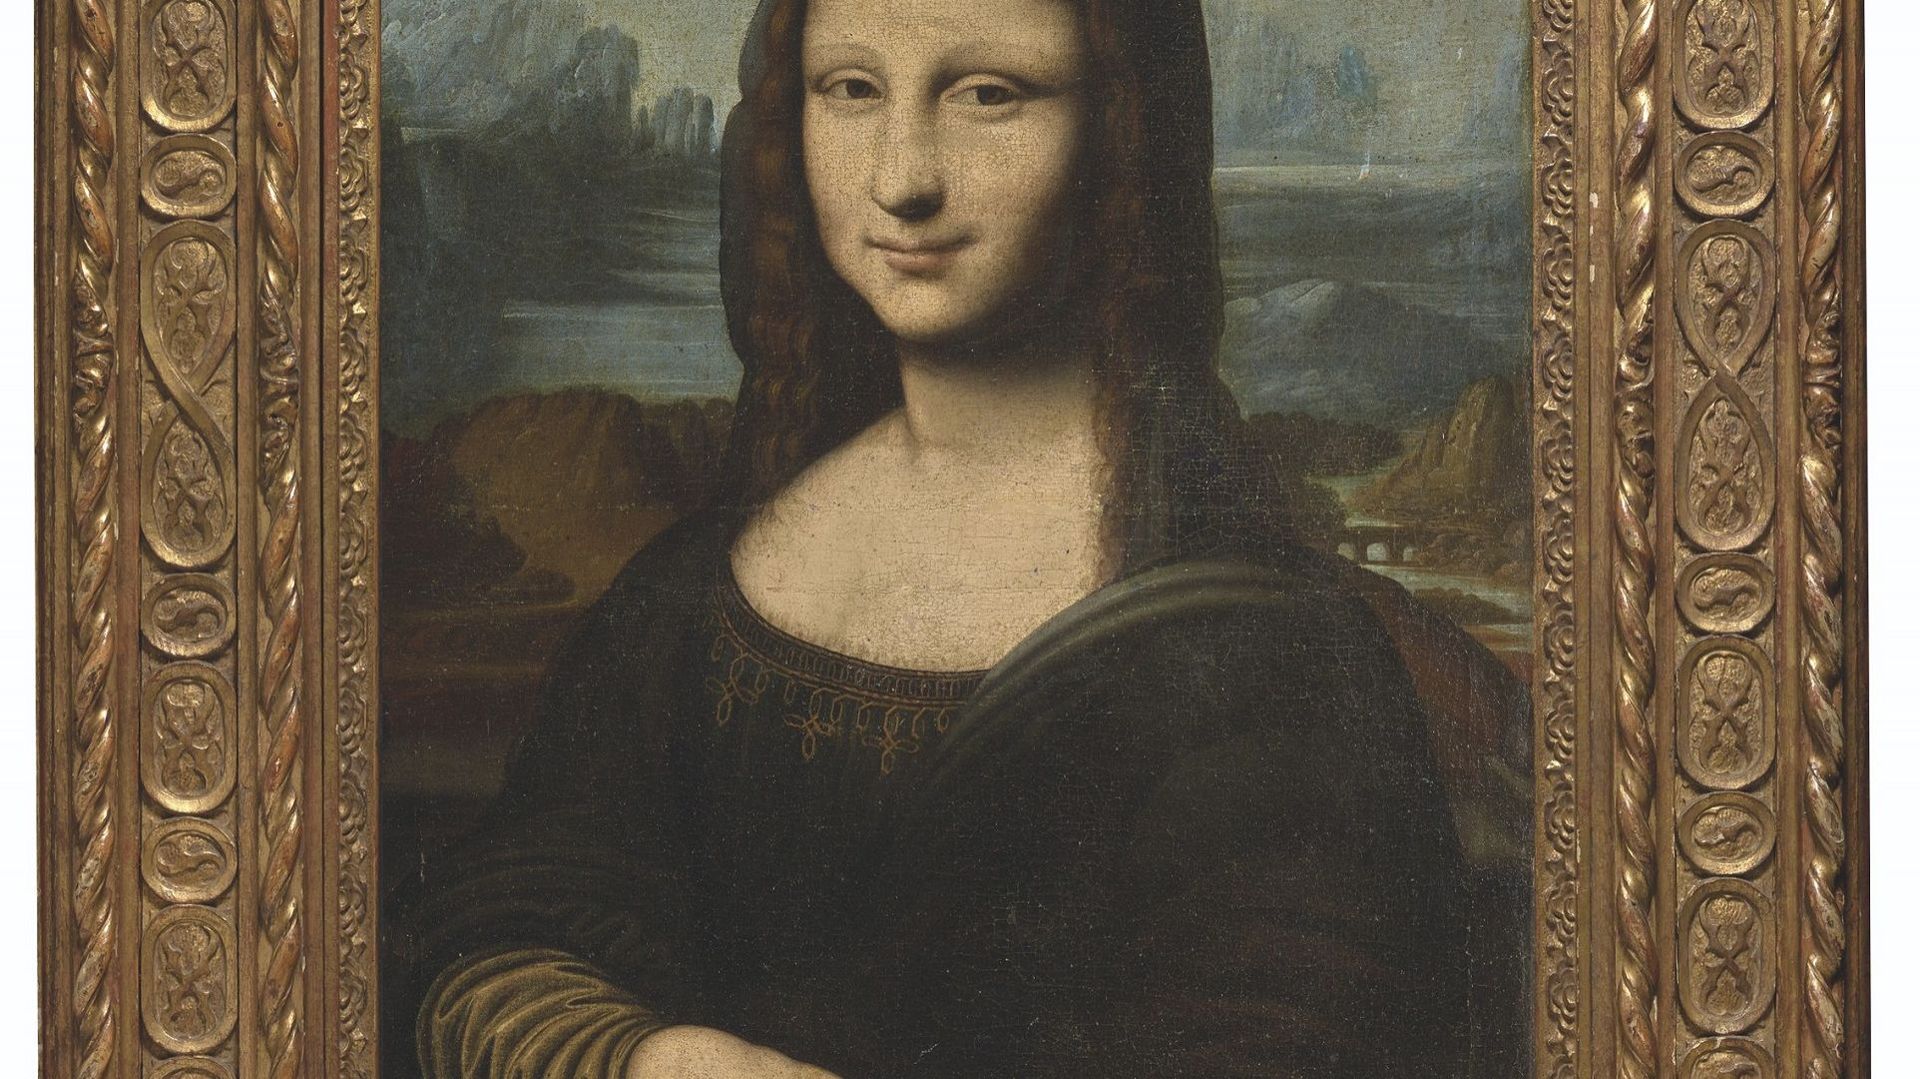 La "Mona Lisa Hekking" estimée entre 200.000 euros et 300.000 euros par Christie's.